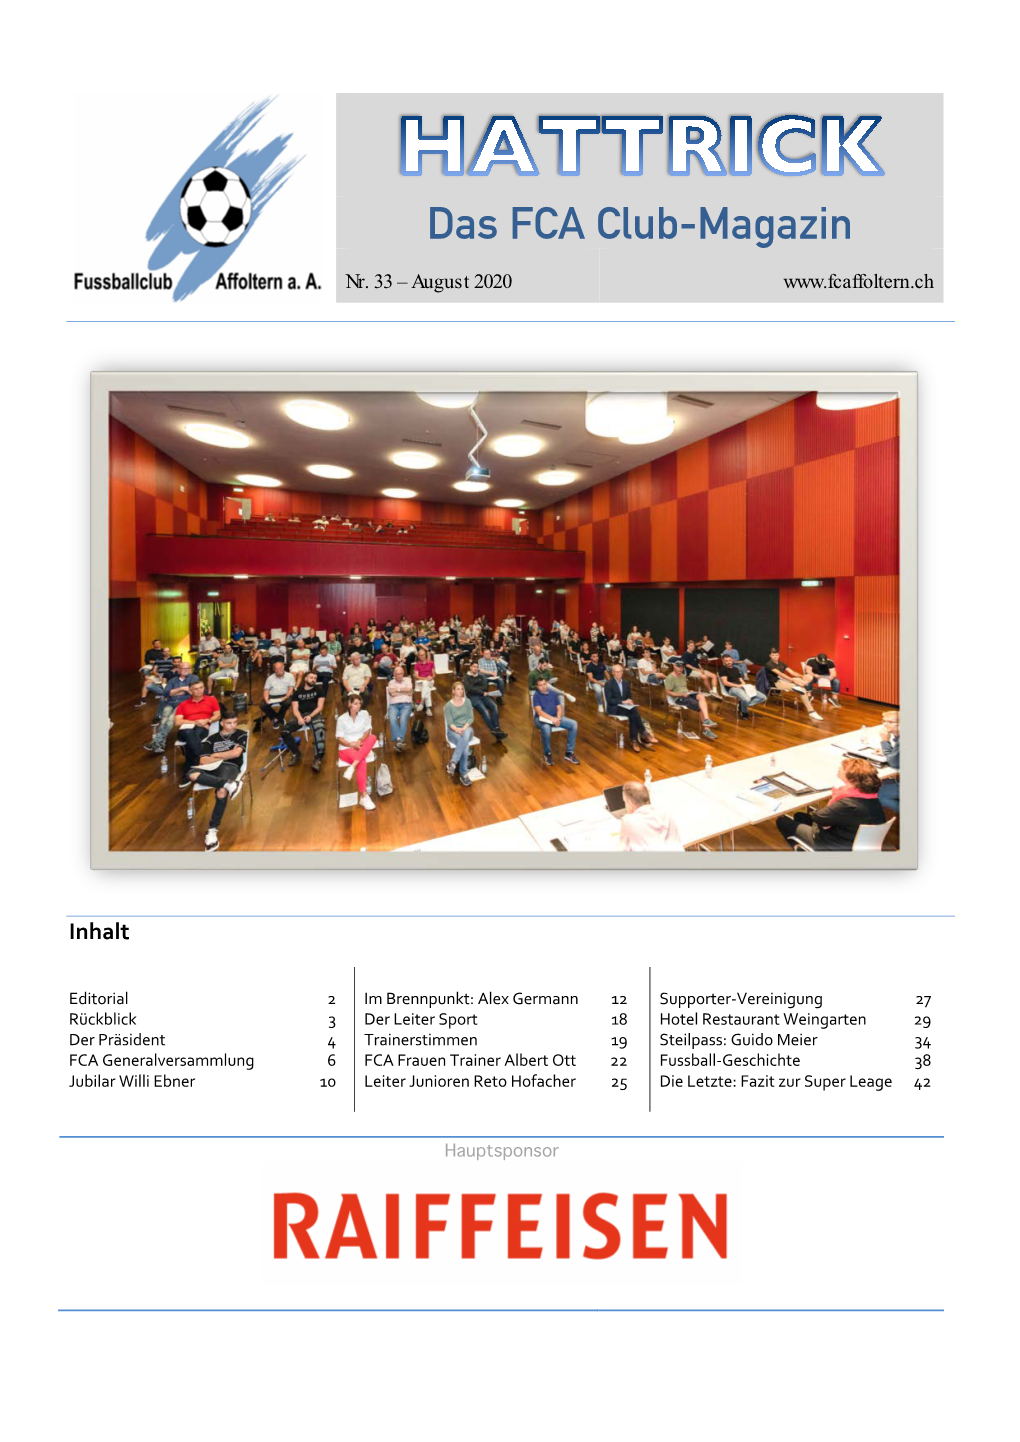 Das FCA Club-Magazin